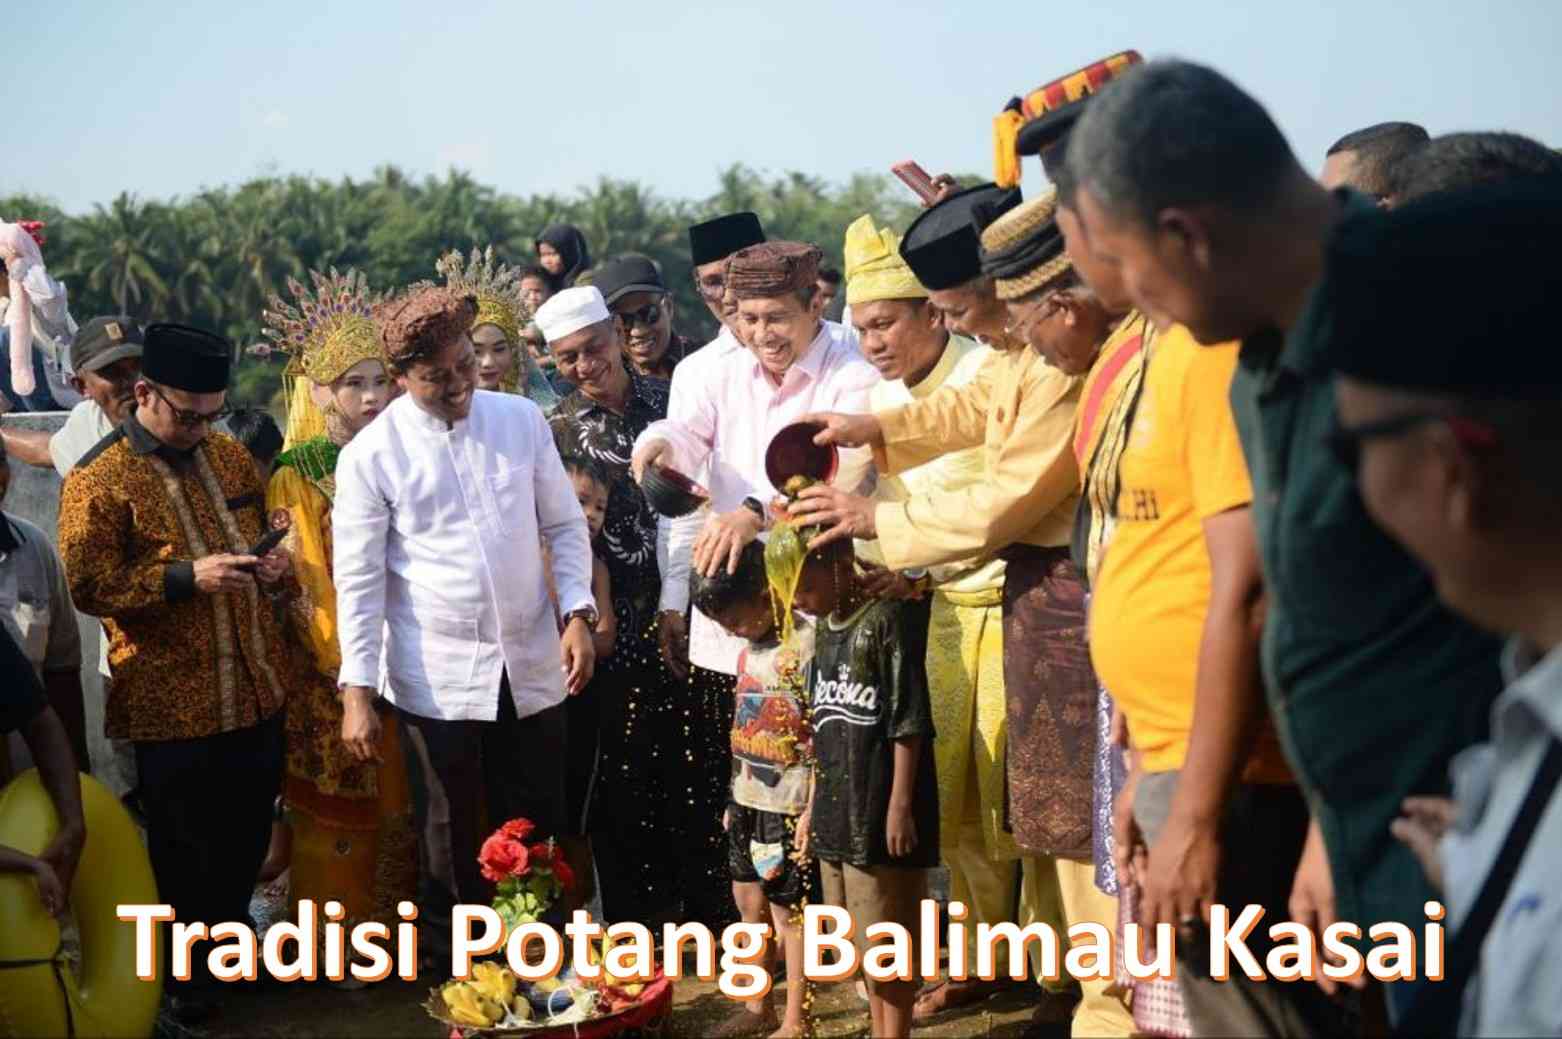 Image: Gubernur Riau dan Bupati Kampar mengikuti tradisi potang balimau kasai di  Desa Batu Belah, Kabupaten Kampar (Photo: Humas Prov. Riau)